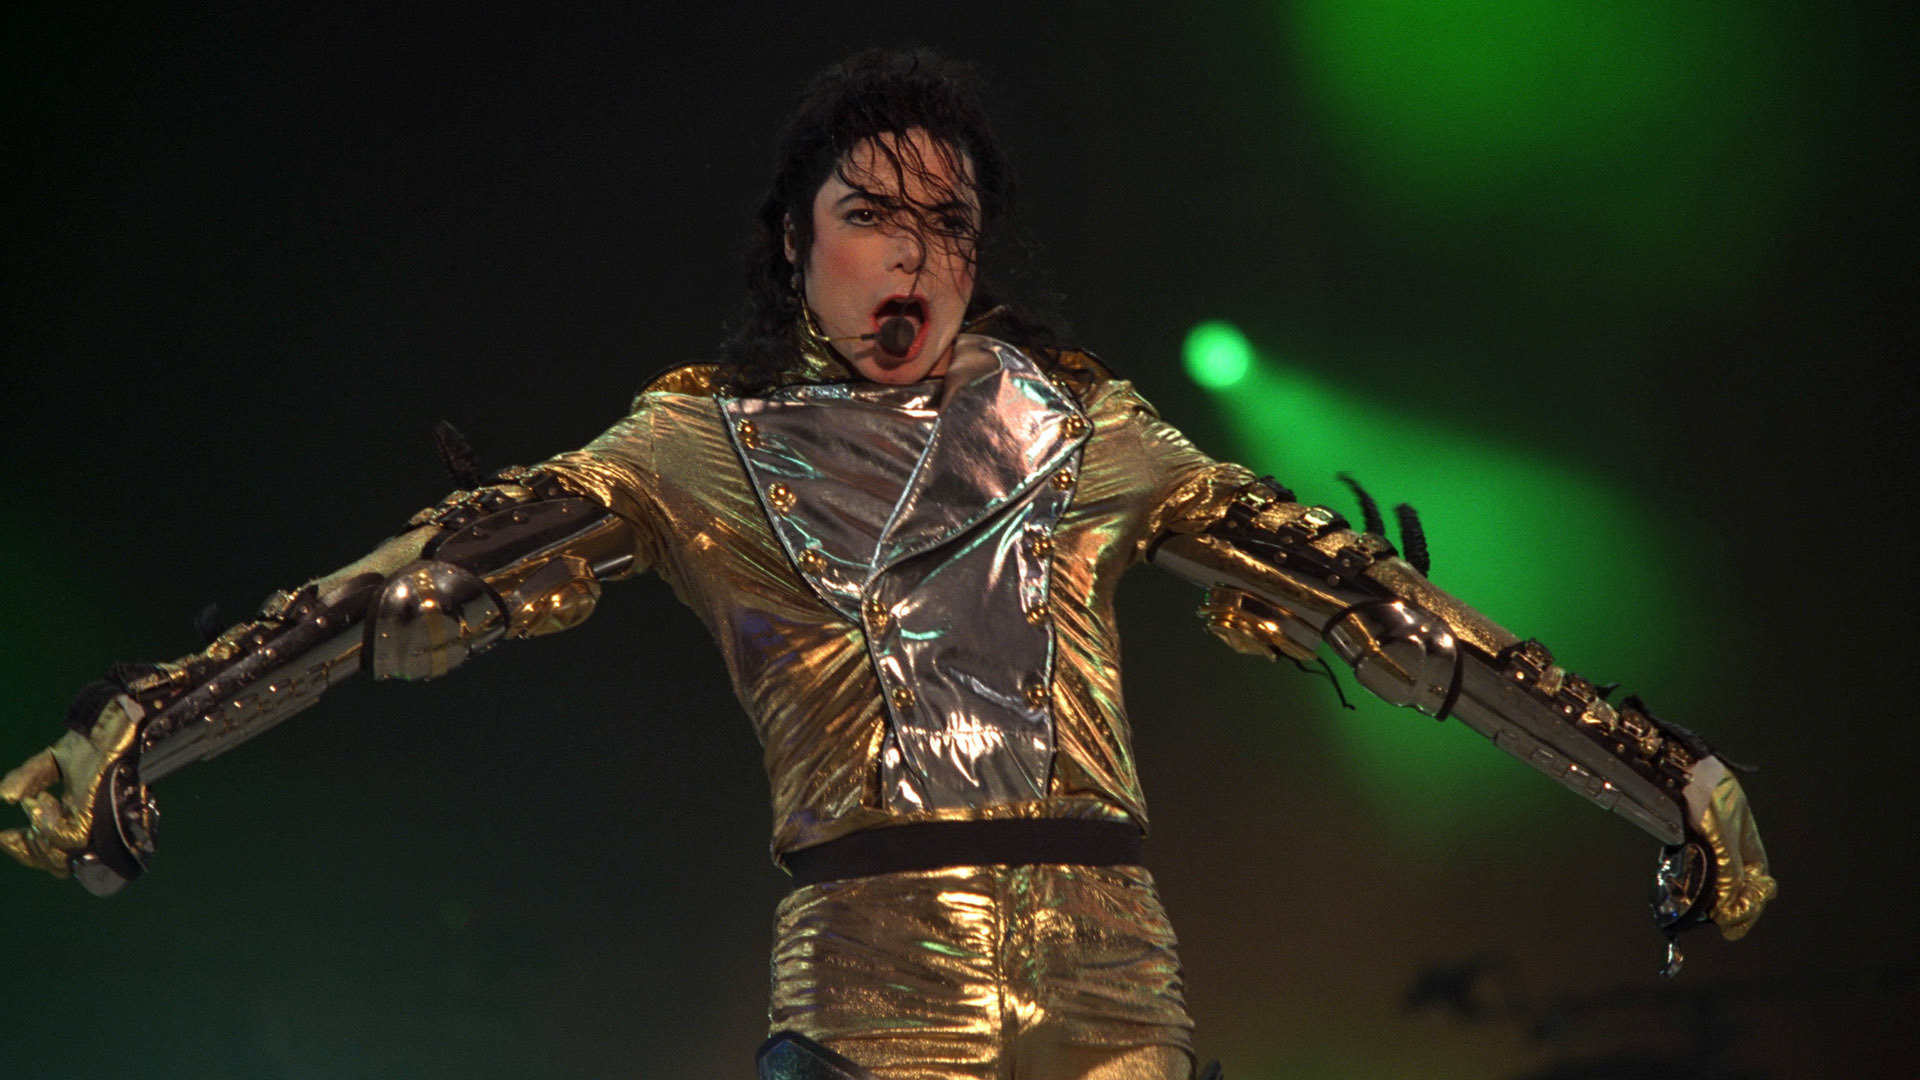 Michael Jackson, Leistung, Unterhaltung, Darstellende Kunst, Musik Künstler. Wallpaper in 1920x1080 Resolution